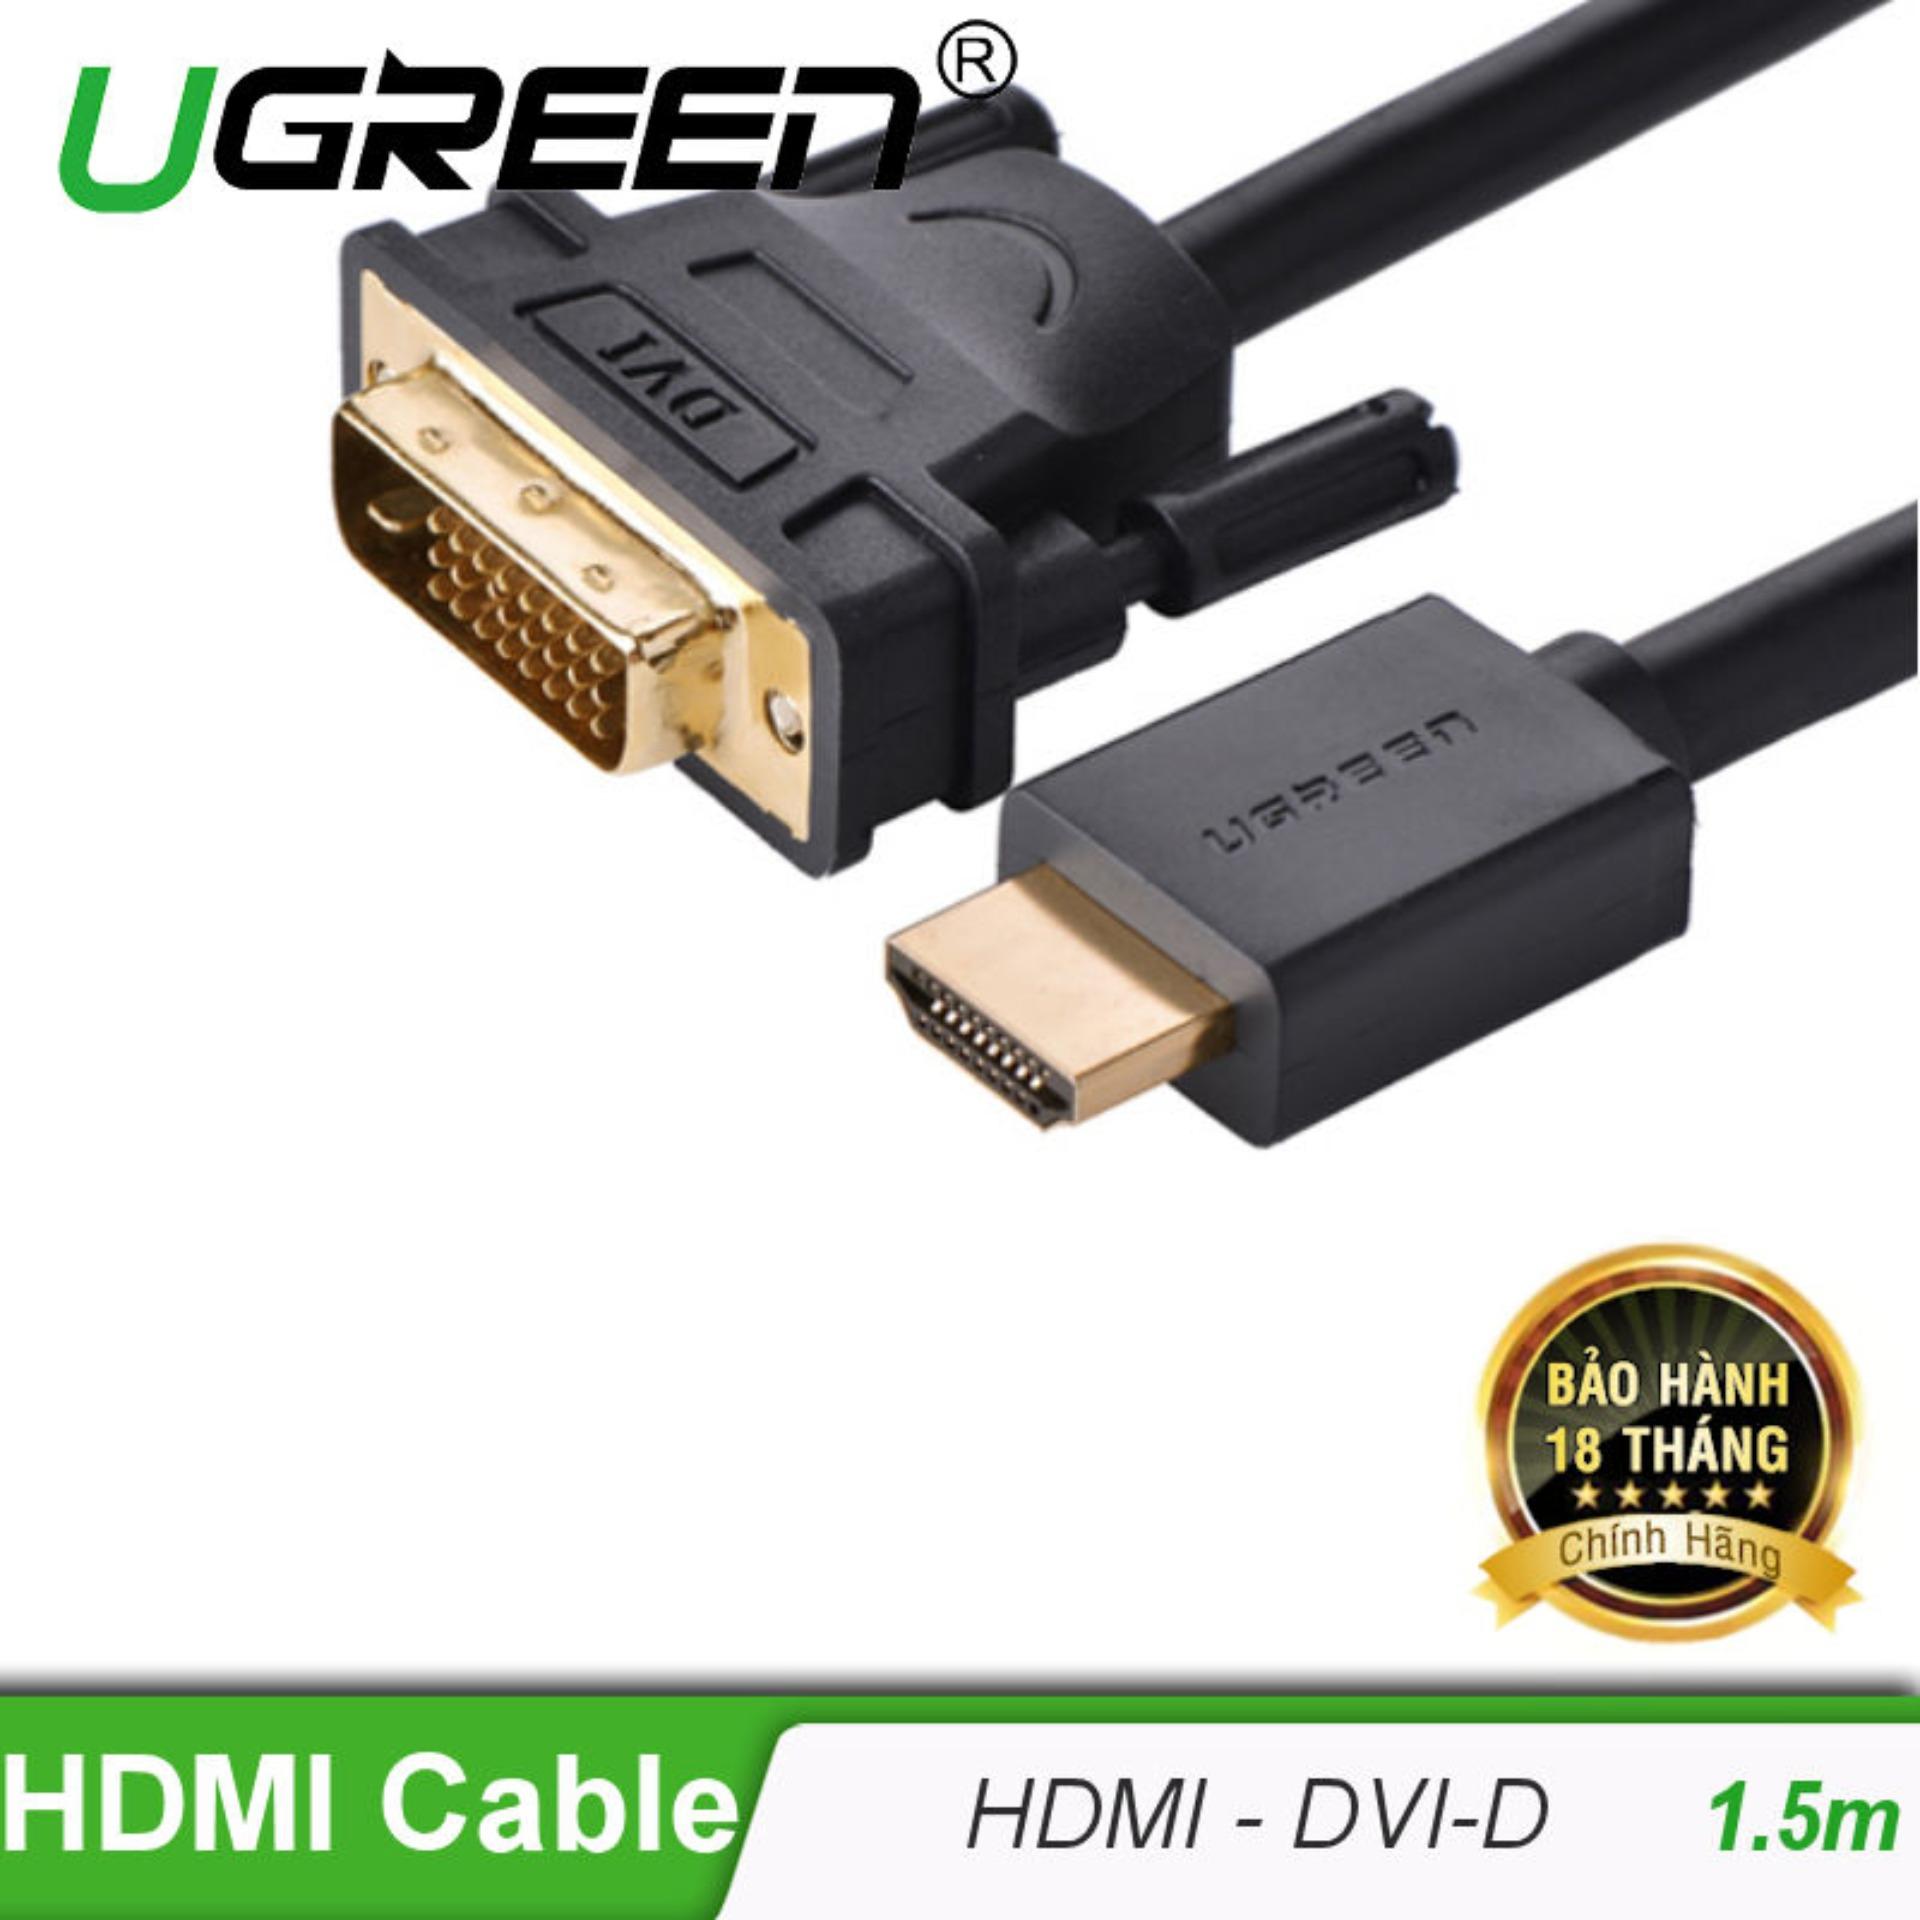 Cáp chuyển đổi HDMI sang DVI-D 24+1 dài 1.5M UGREEN HD106 11150 (Đen) - Hãng phân phối chính thức.